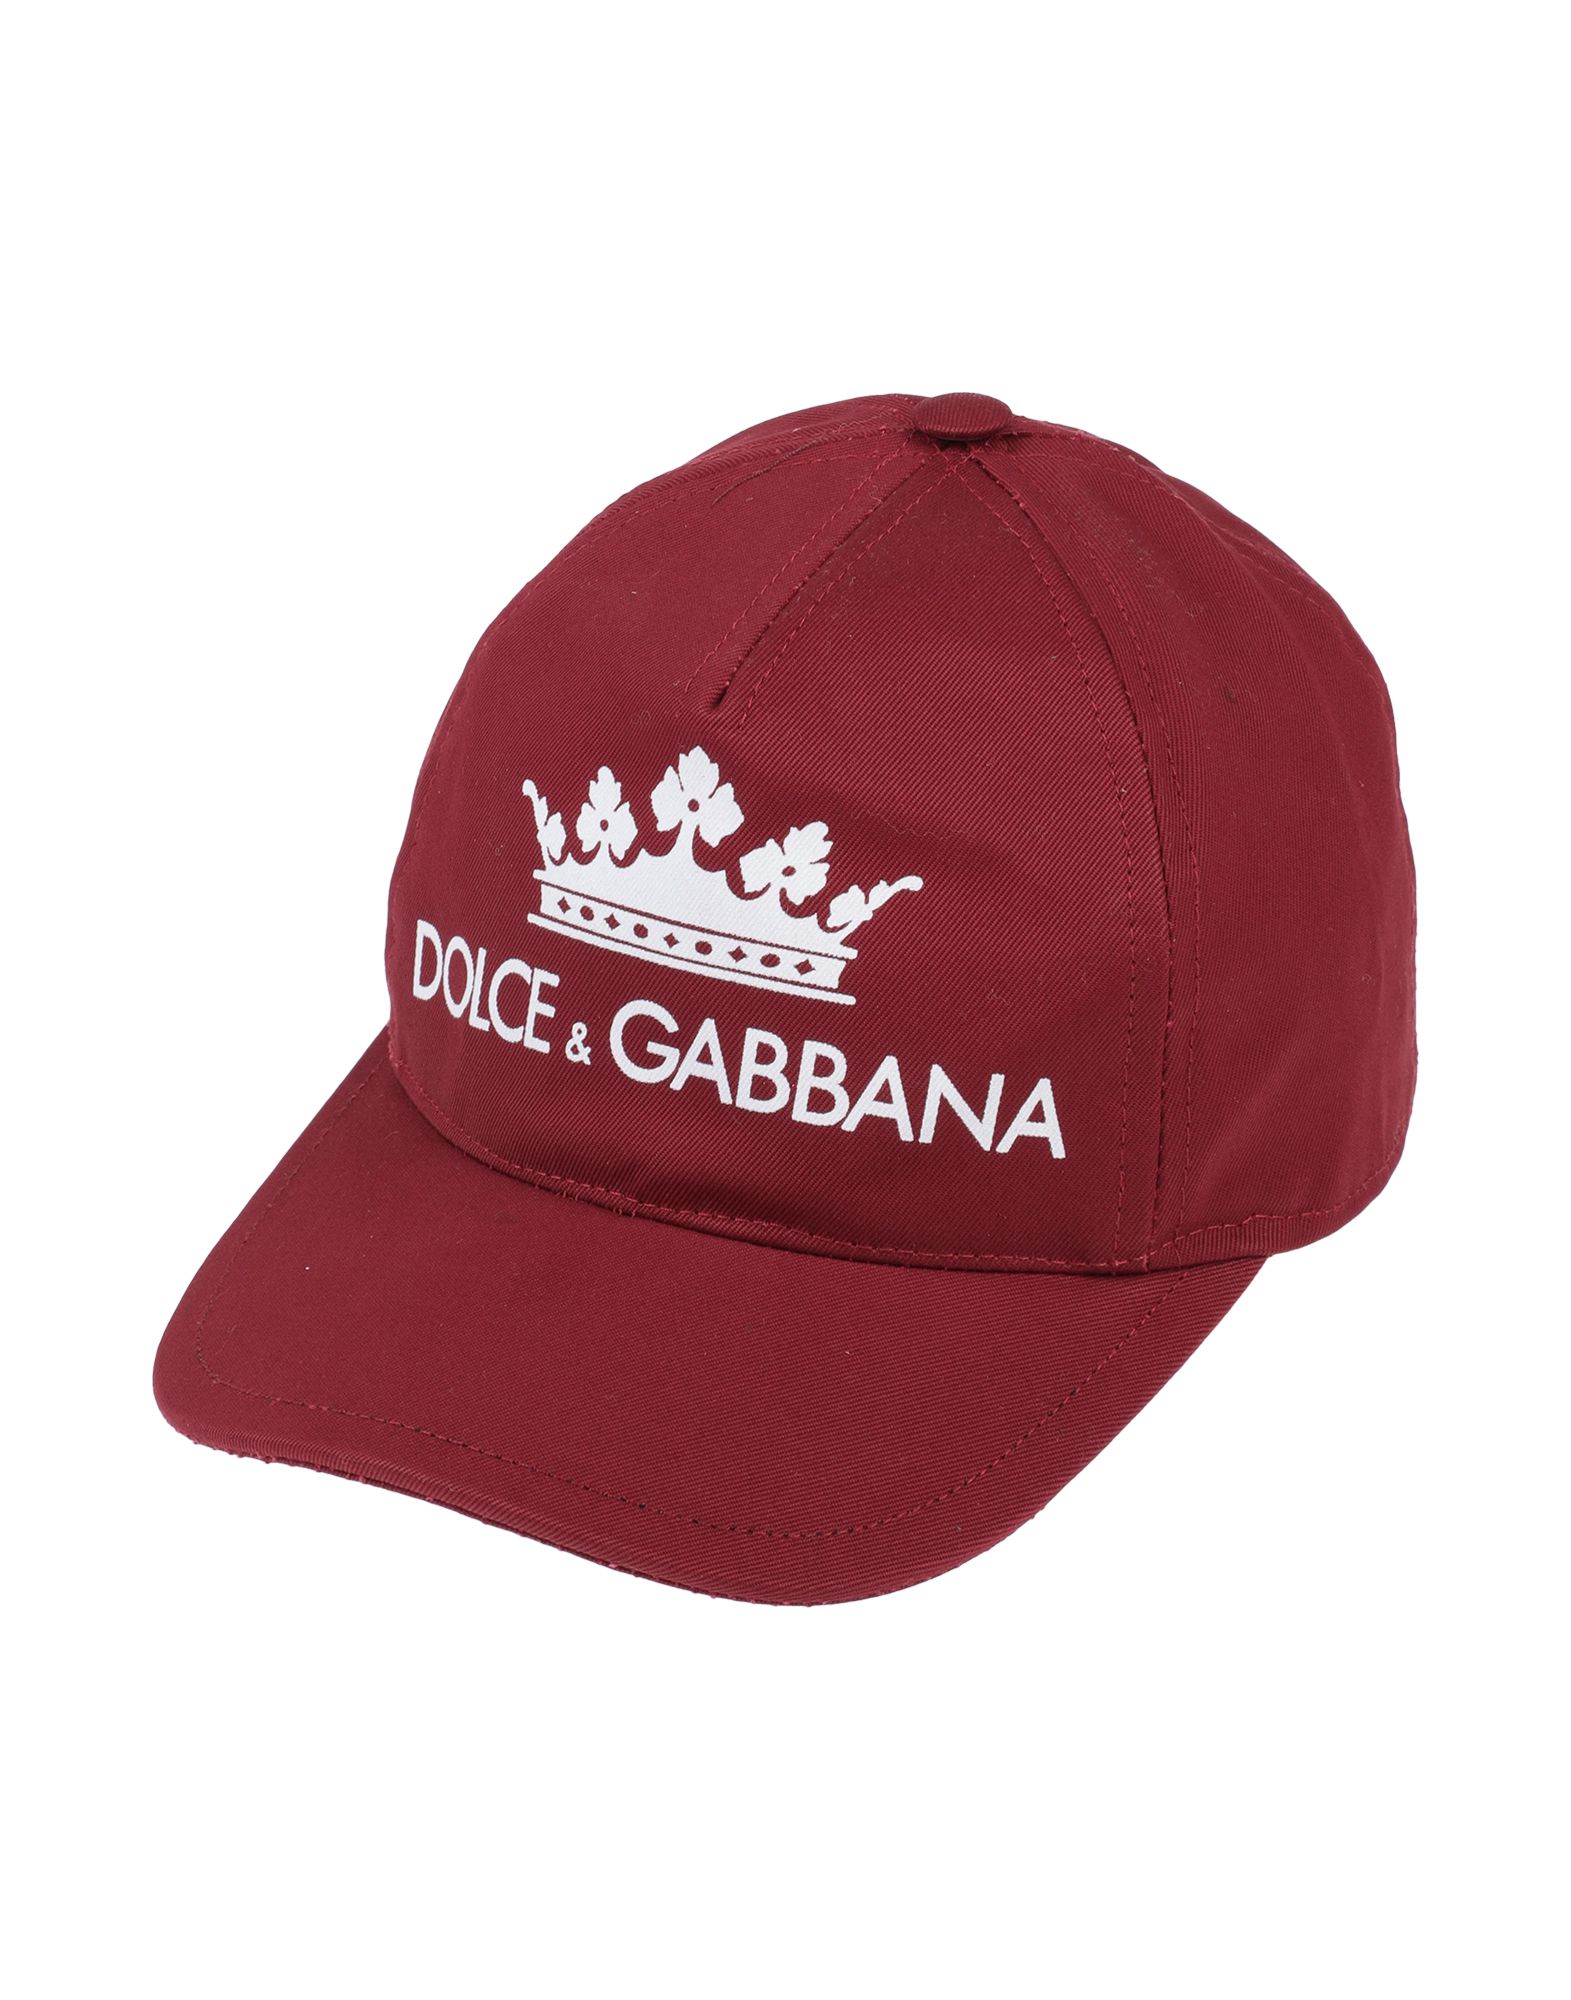 DOLCE & GABBANA HATS,46722363NV 17